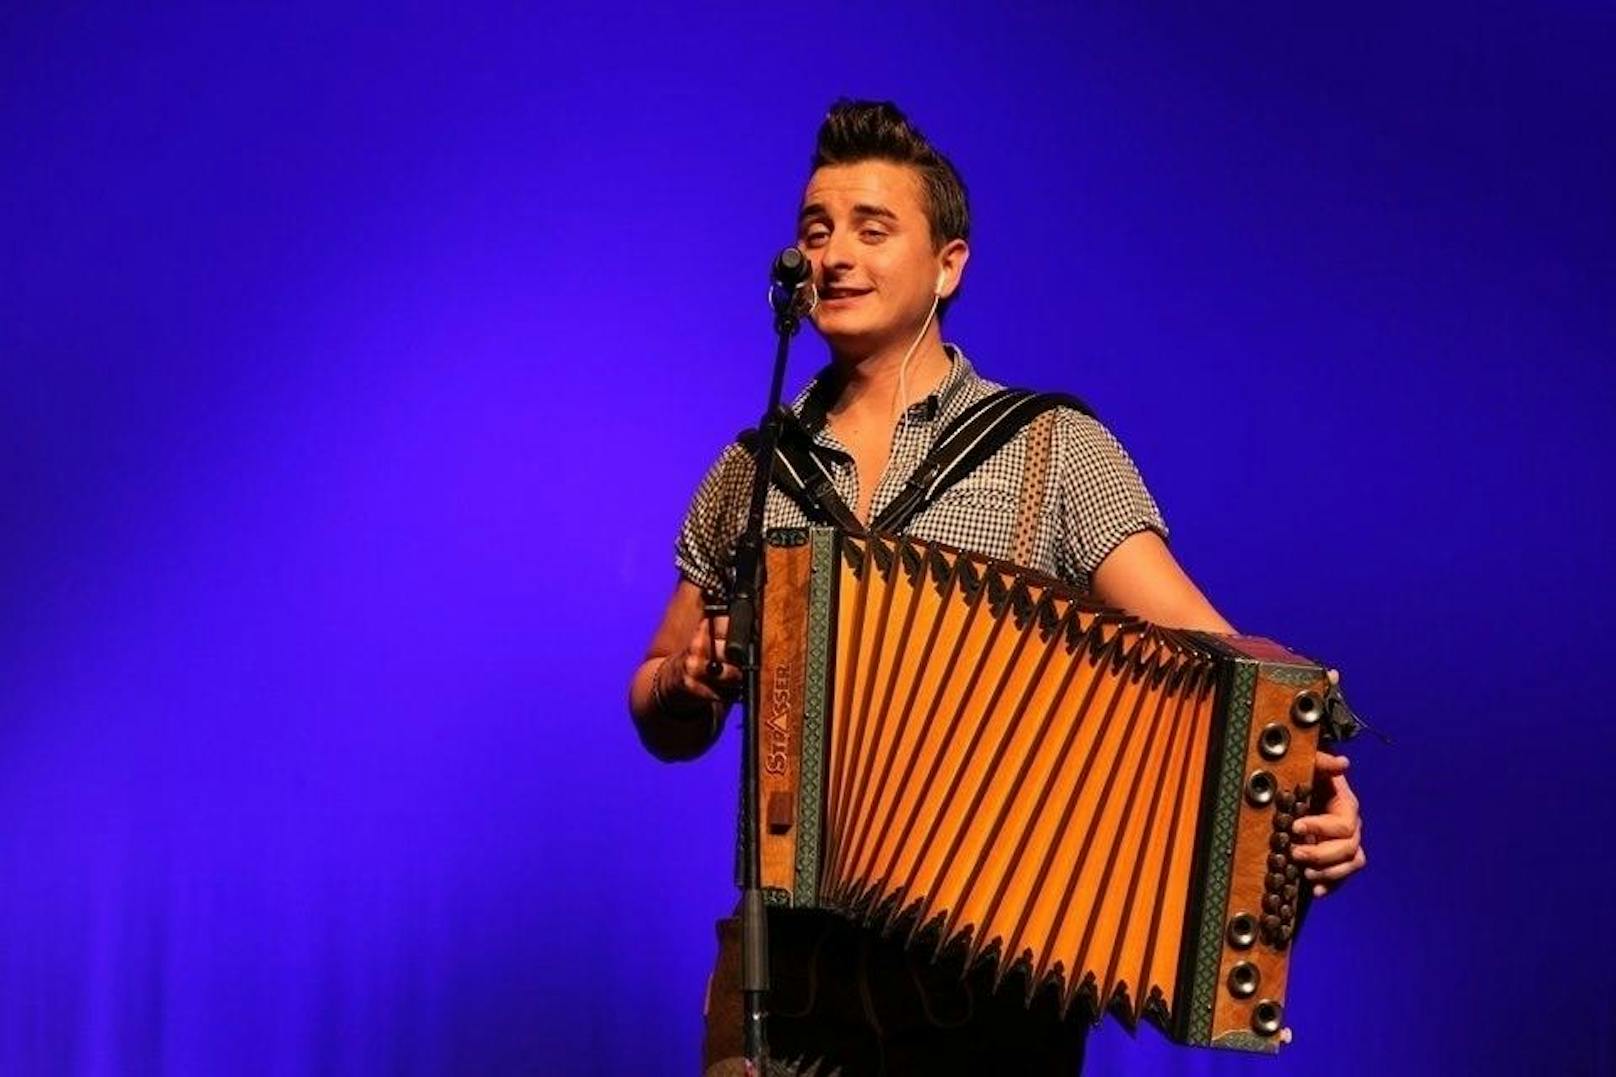 Andreas Gabalier 2011 bei einem Konzert